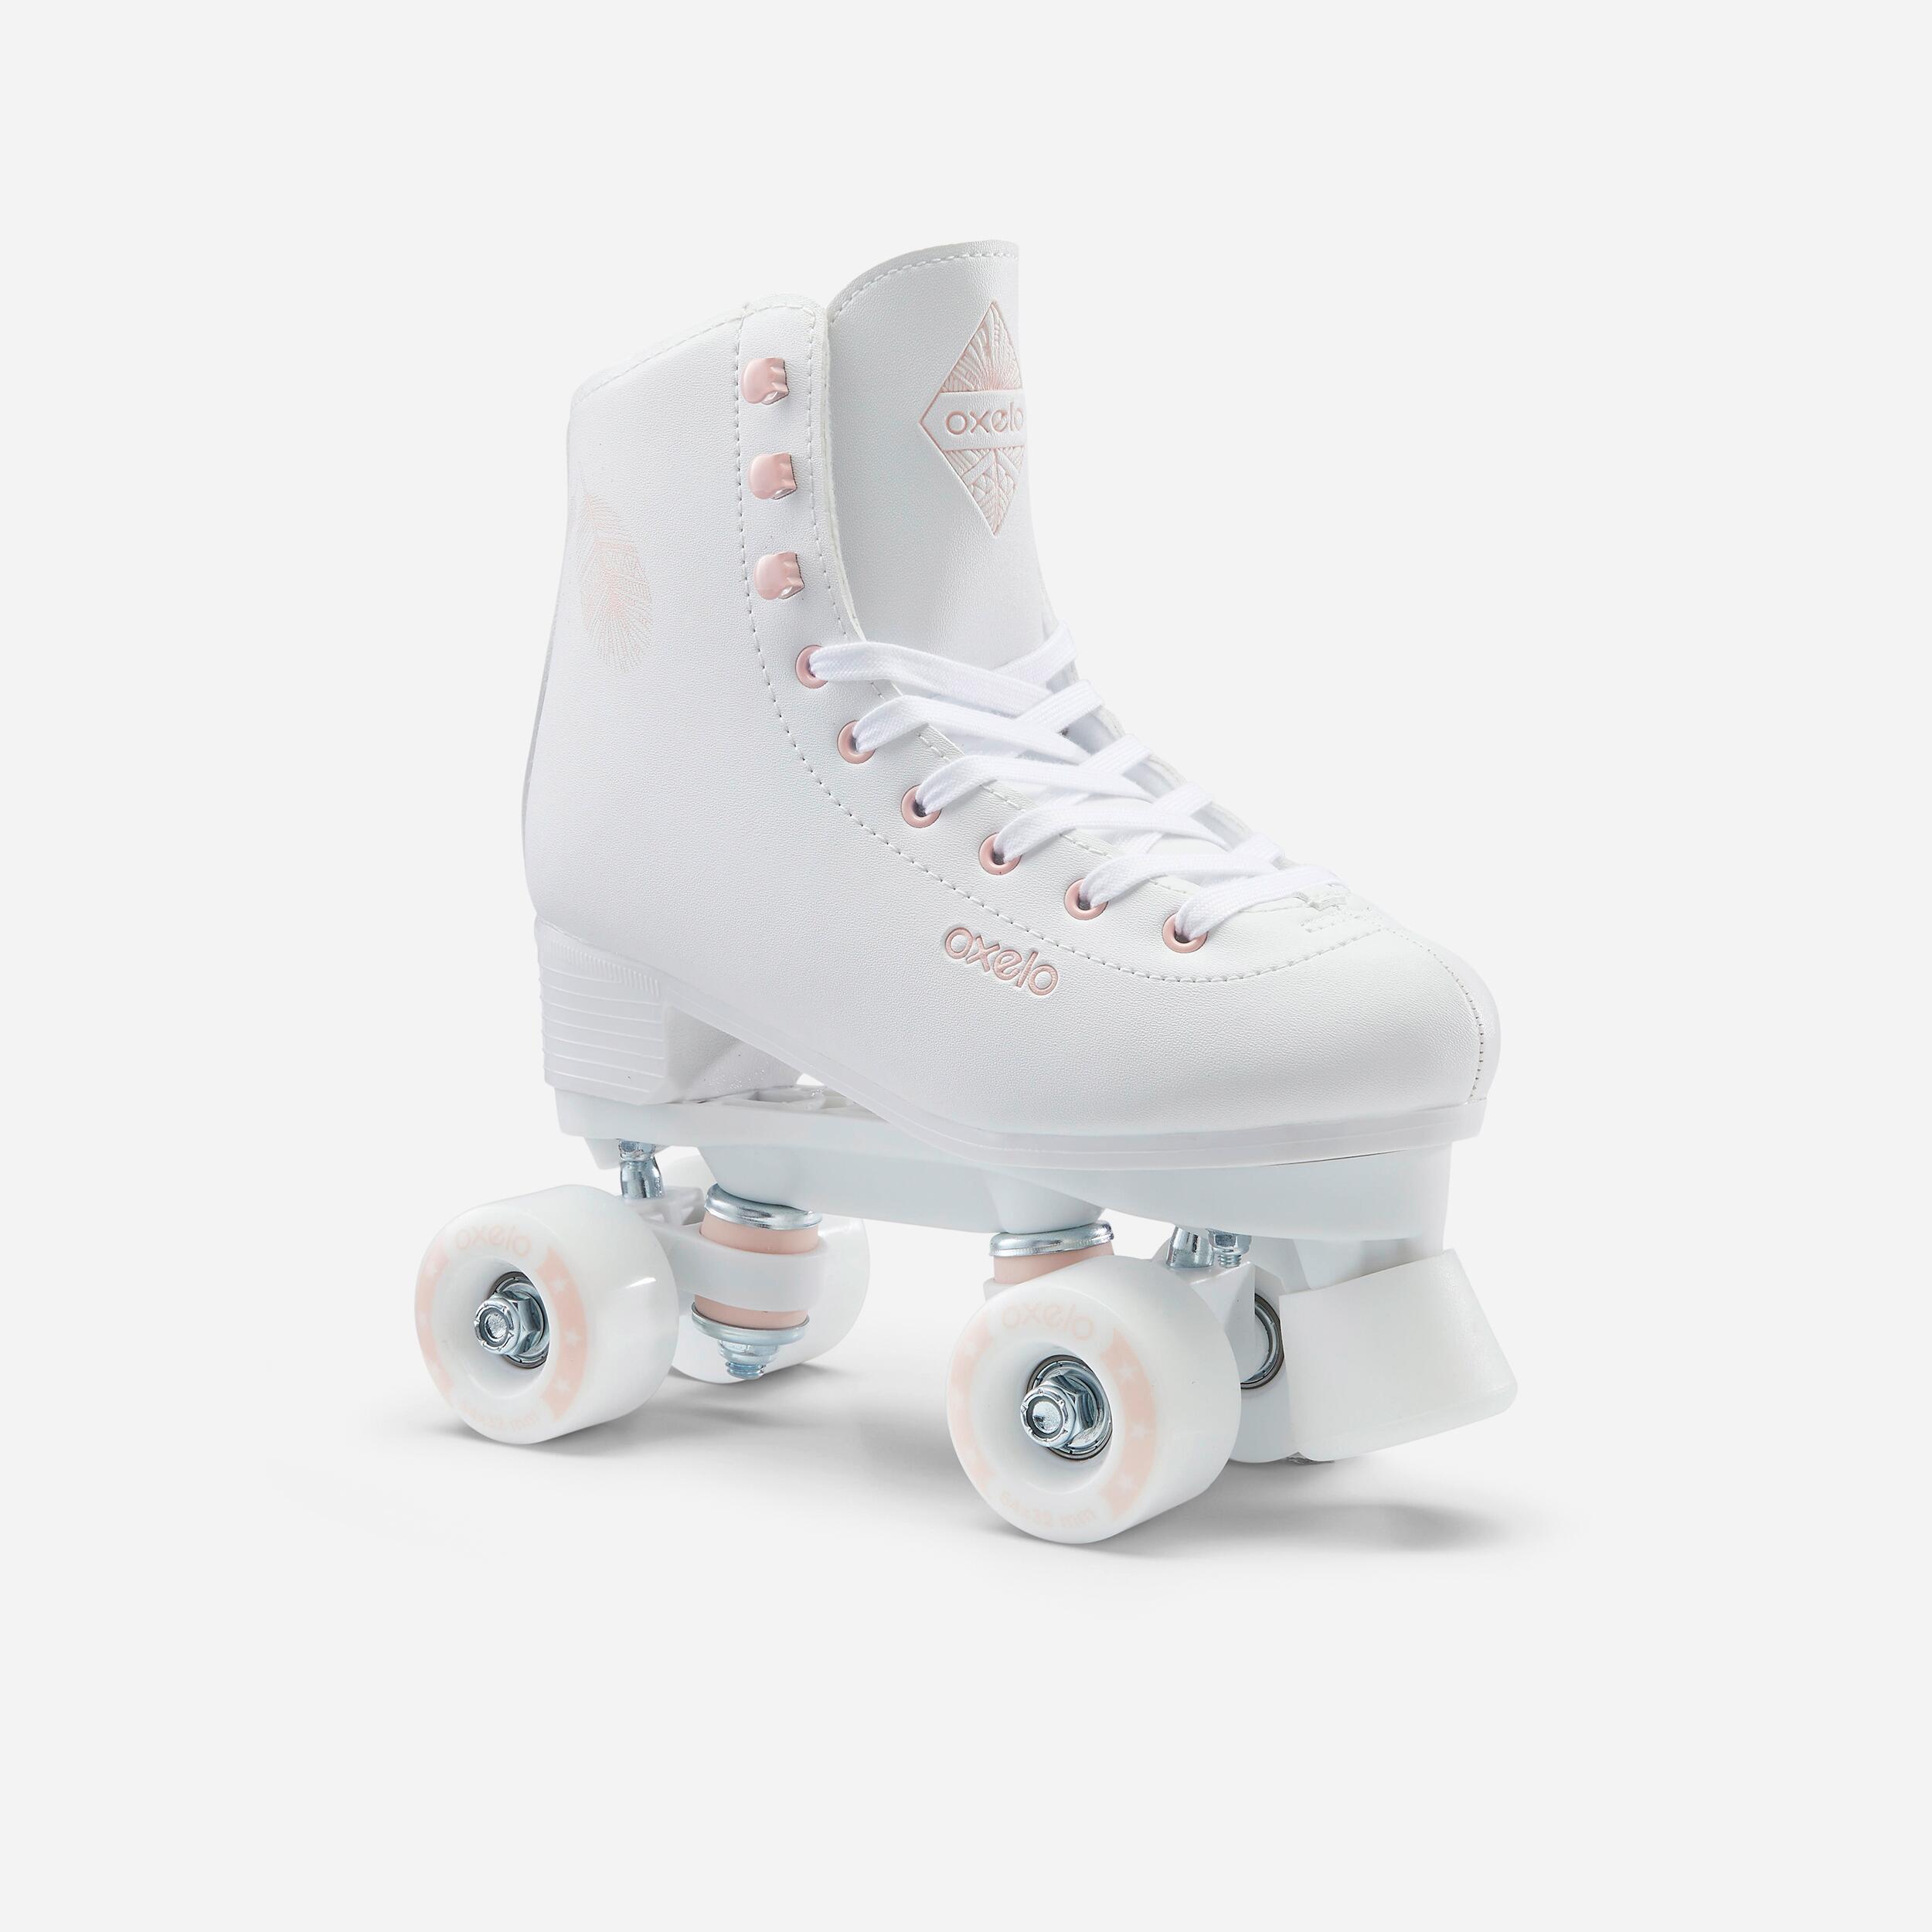 Ctrunit Verstellbare Inline-Skates mit Allen Beleuchteten Rädern